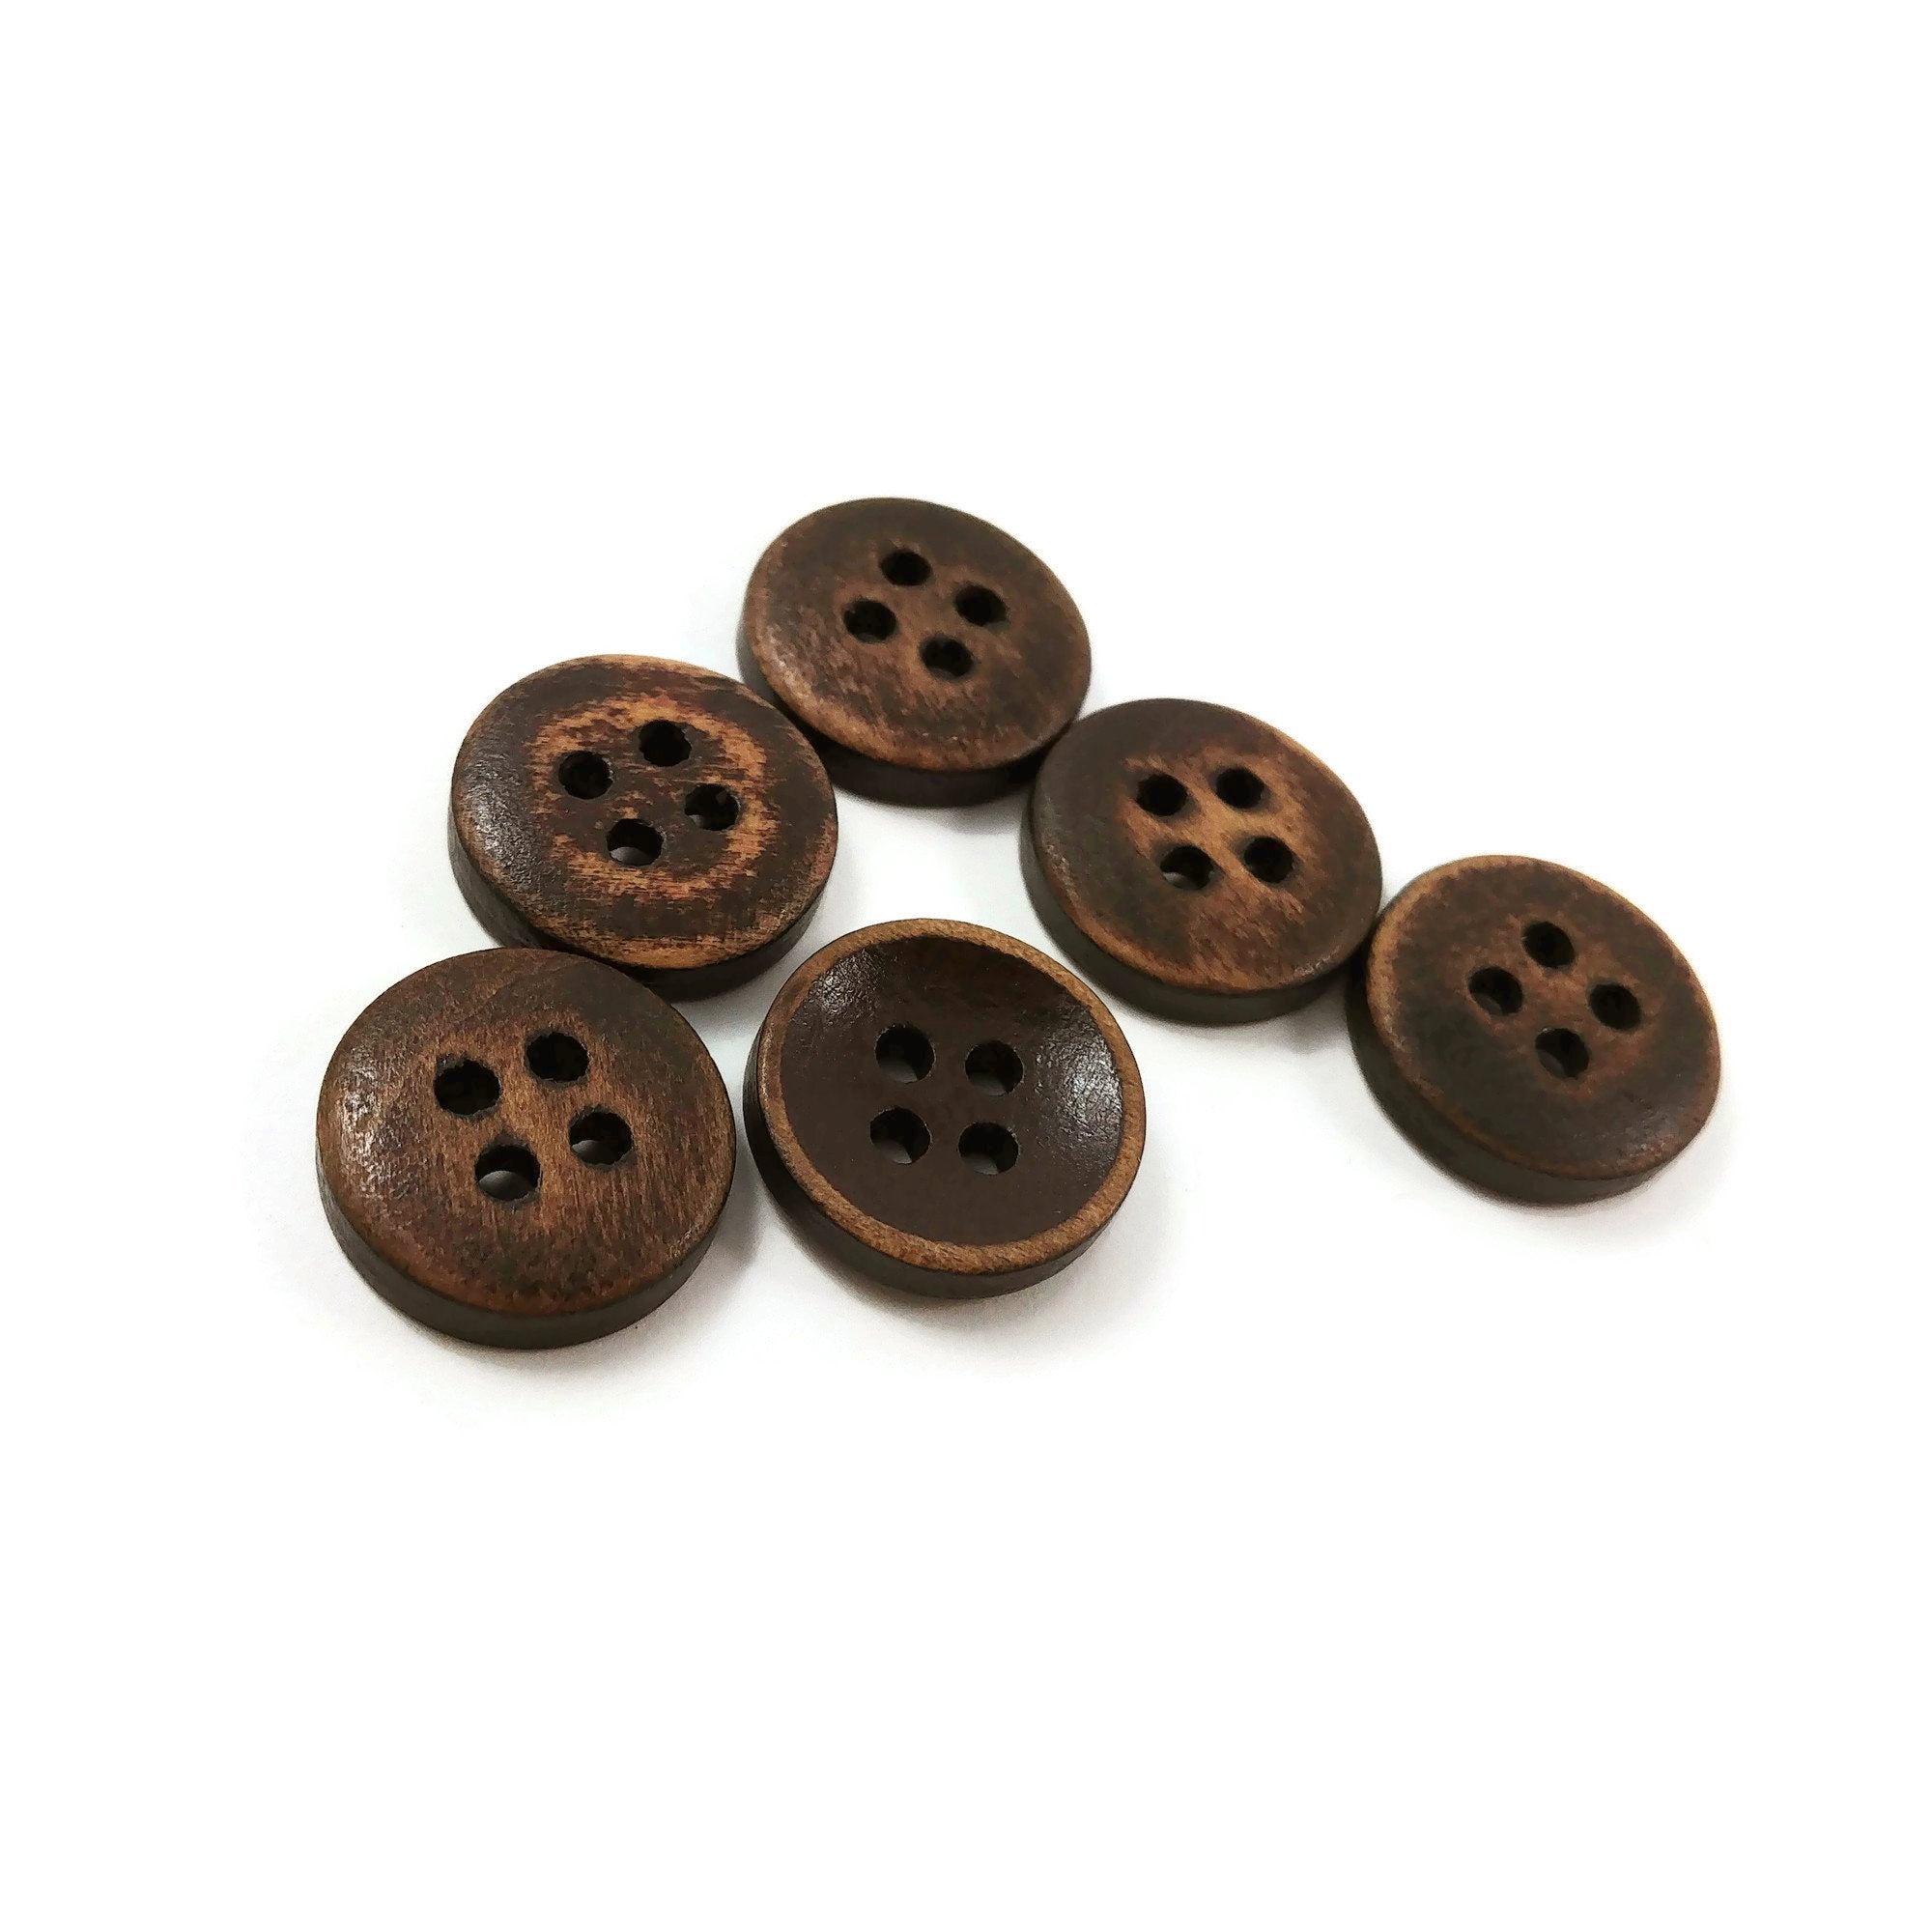 Bouton de bois marron foncé de 1.5cm - ensemble de 6 boutons